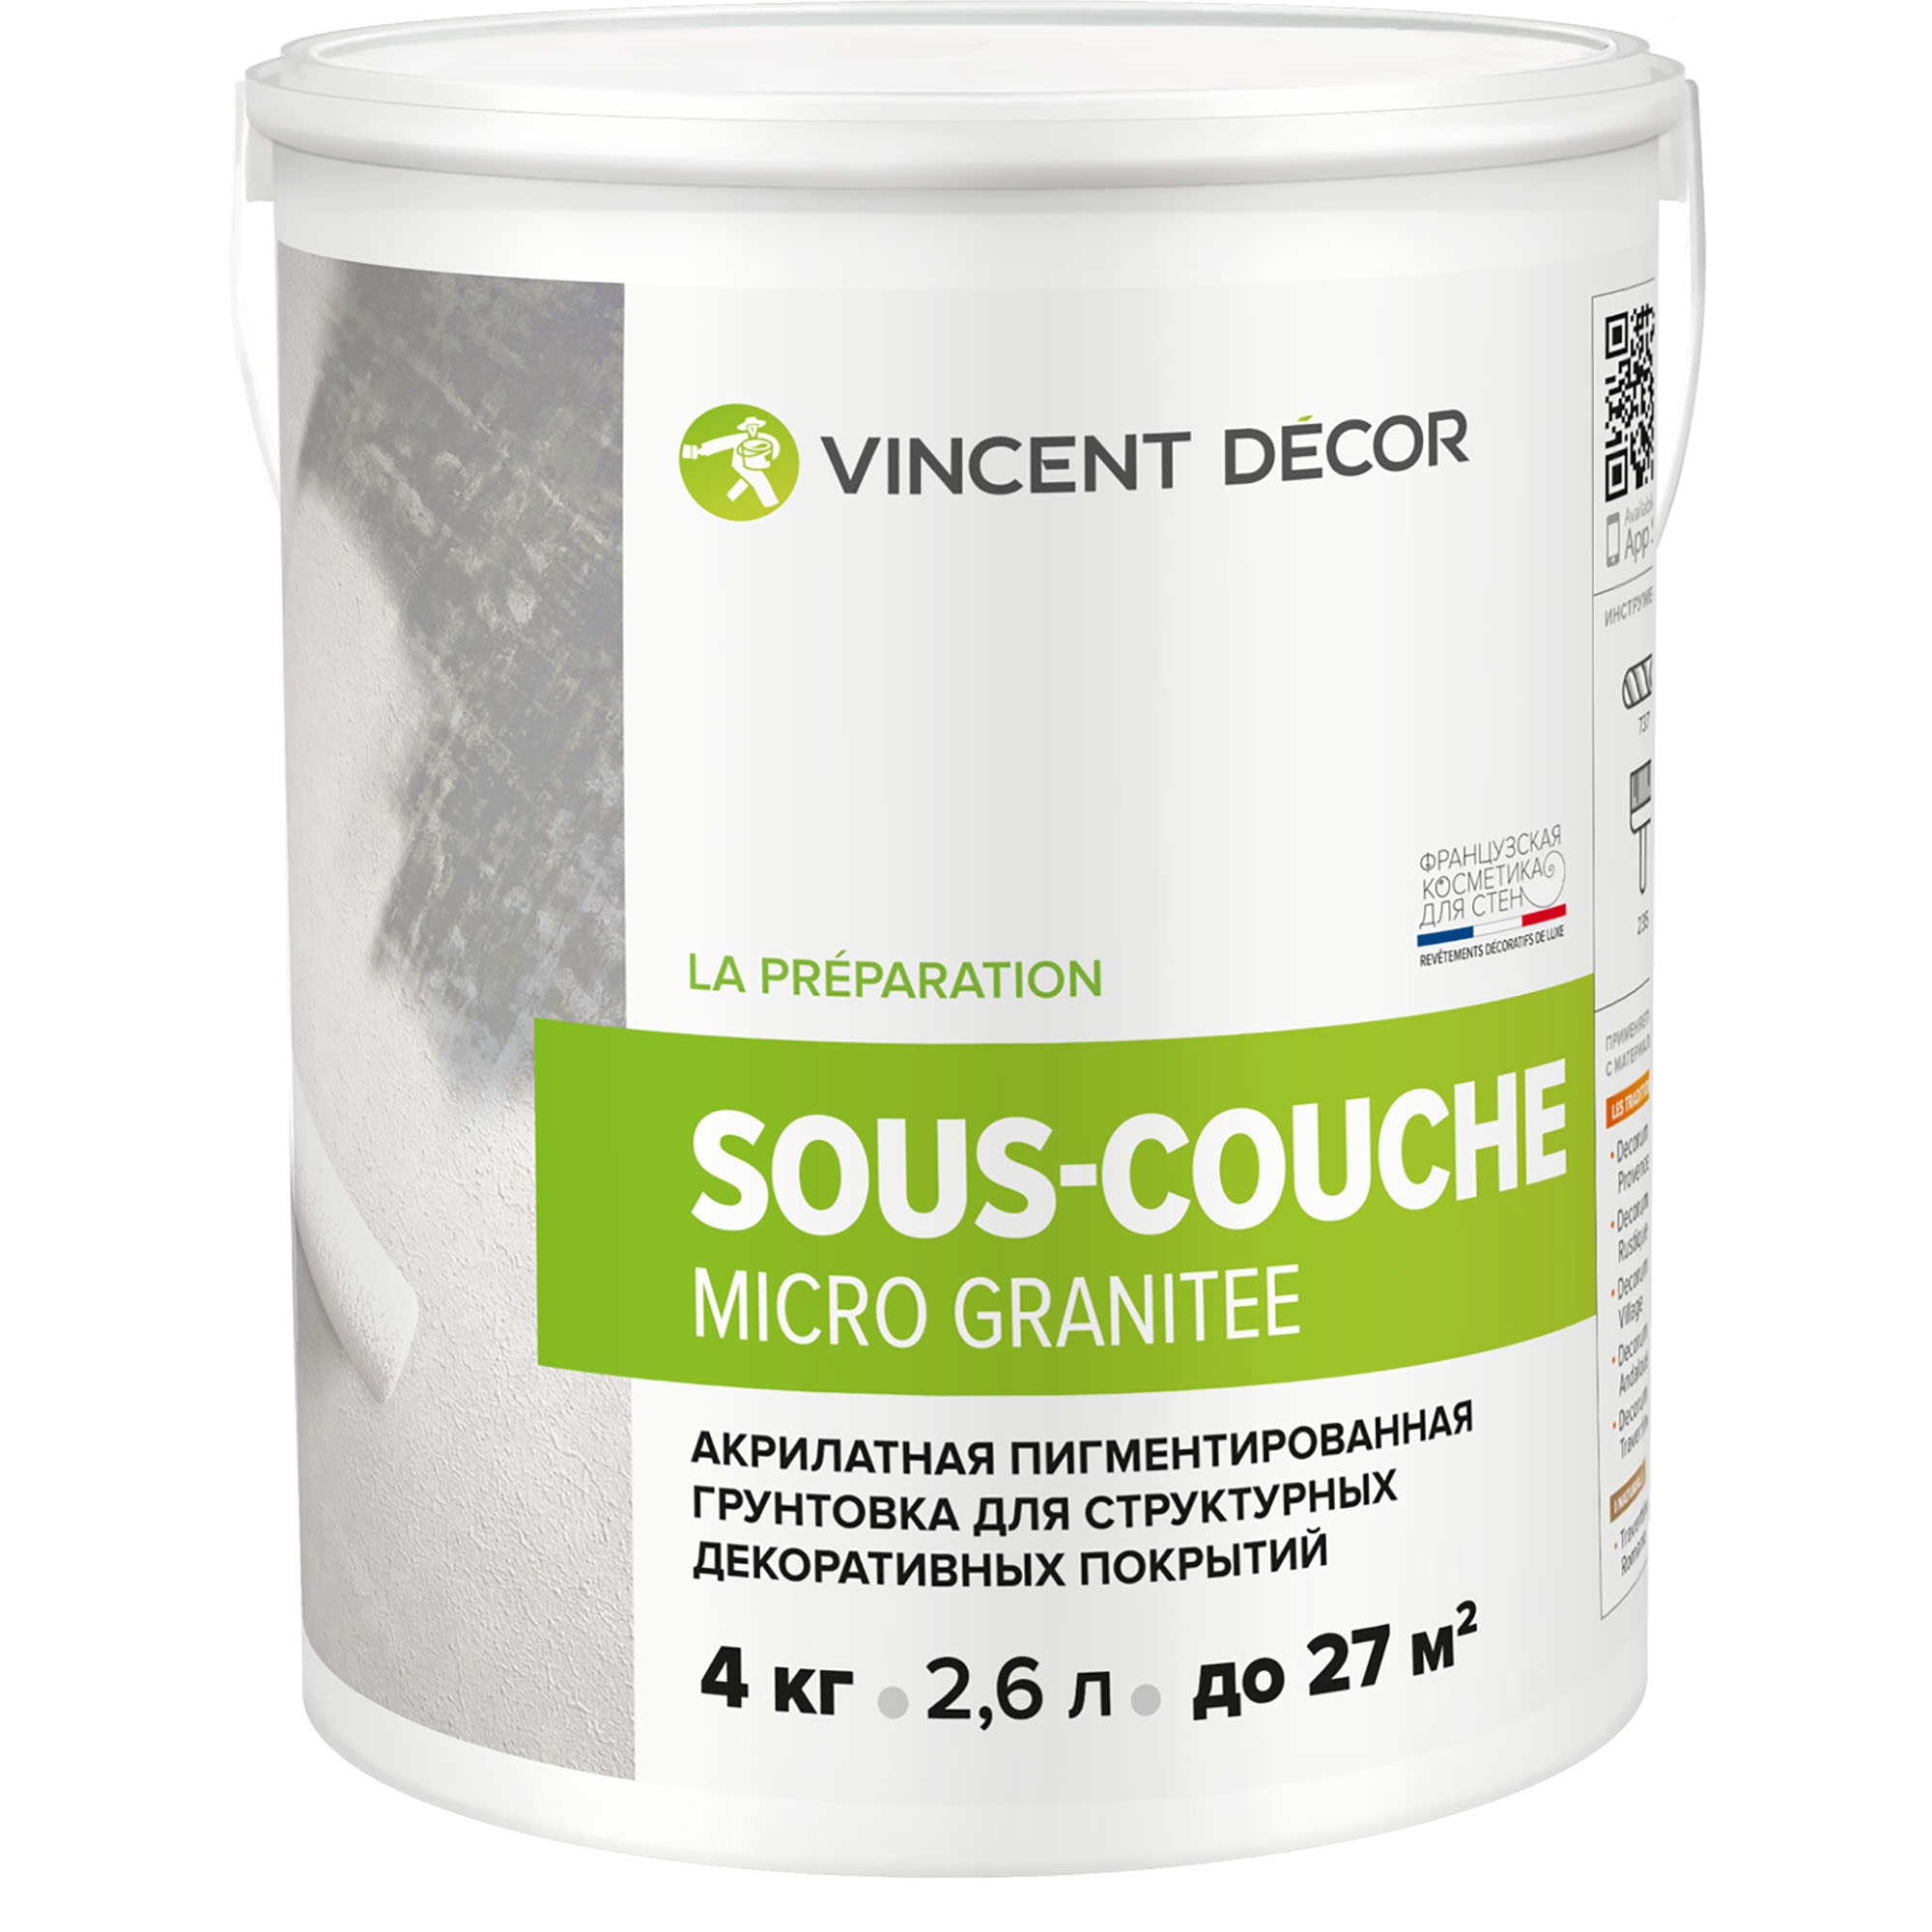 Грунтовка для структурных декоративных покрытий Vincent Decor Sous-Couсhe microgranite 4 кг грунтовка для защиты древесины vincent